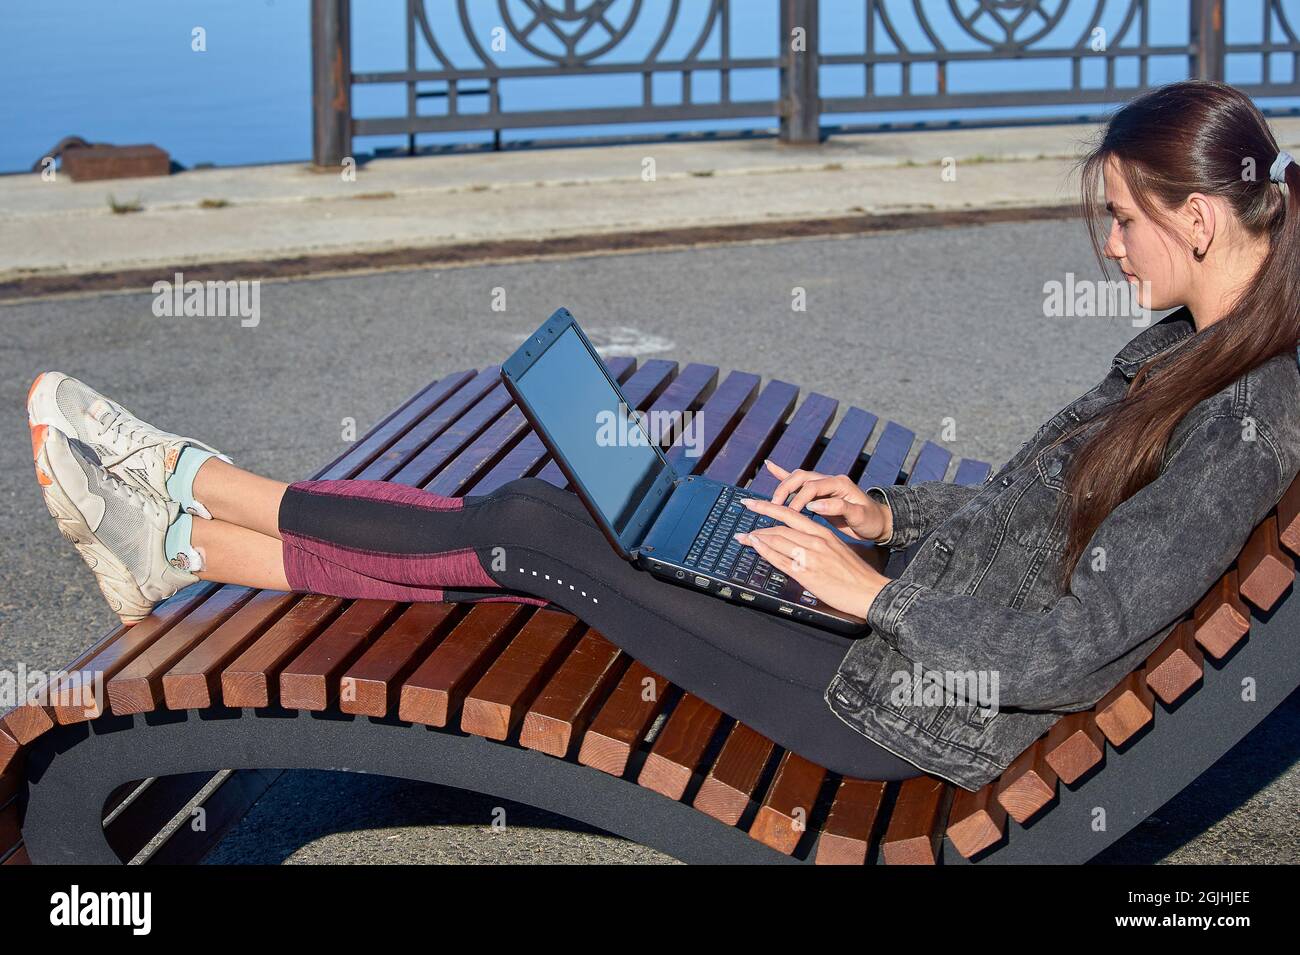 Jeune femme assise sur un banc avec un ordinateur portable et travaillant un jour d'été ensoleillé Banque D'Images